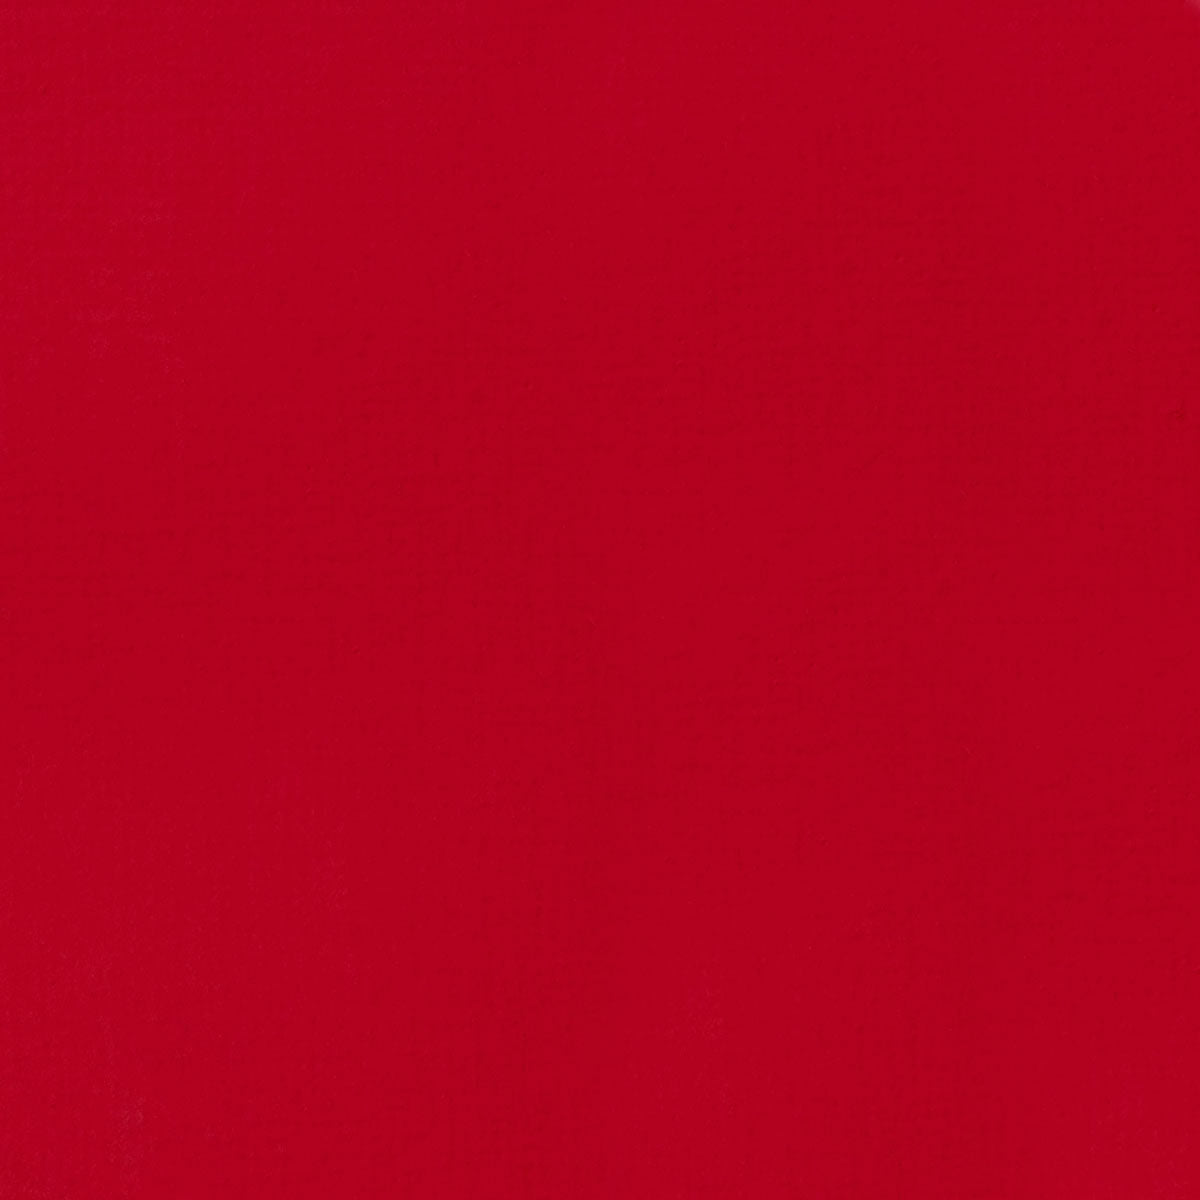 Liquitex - Acryl Gouache 59ml S1 - Primair rood